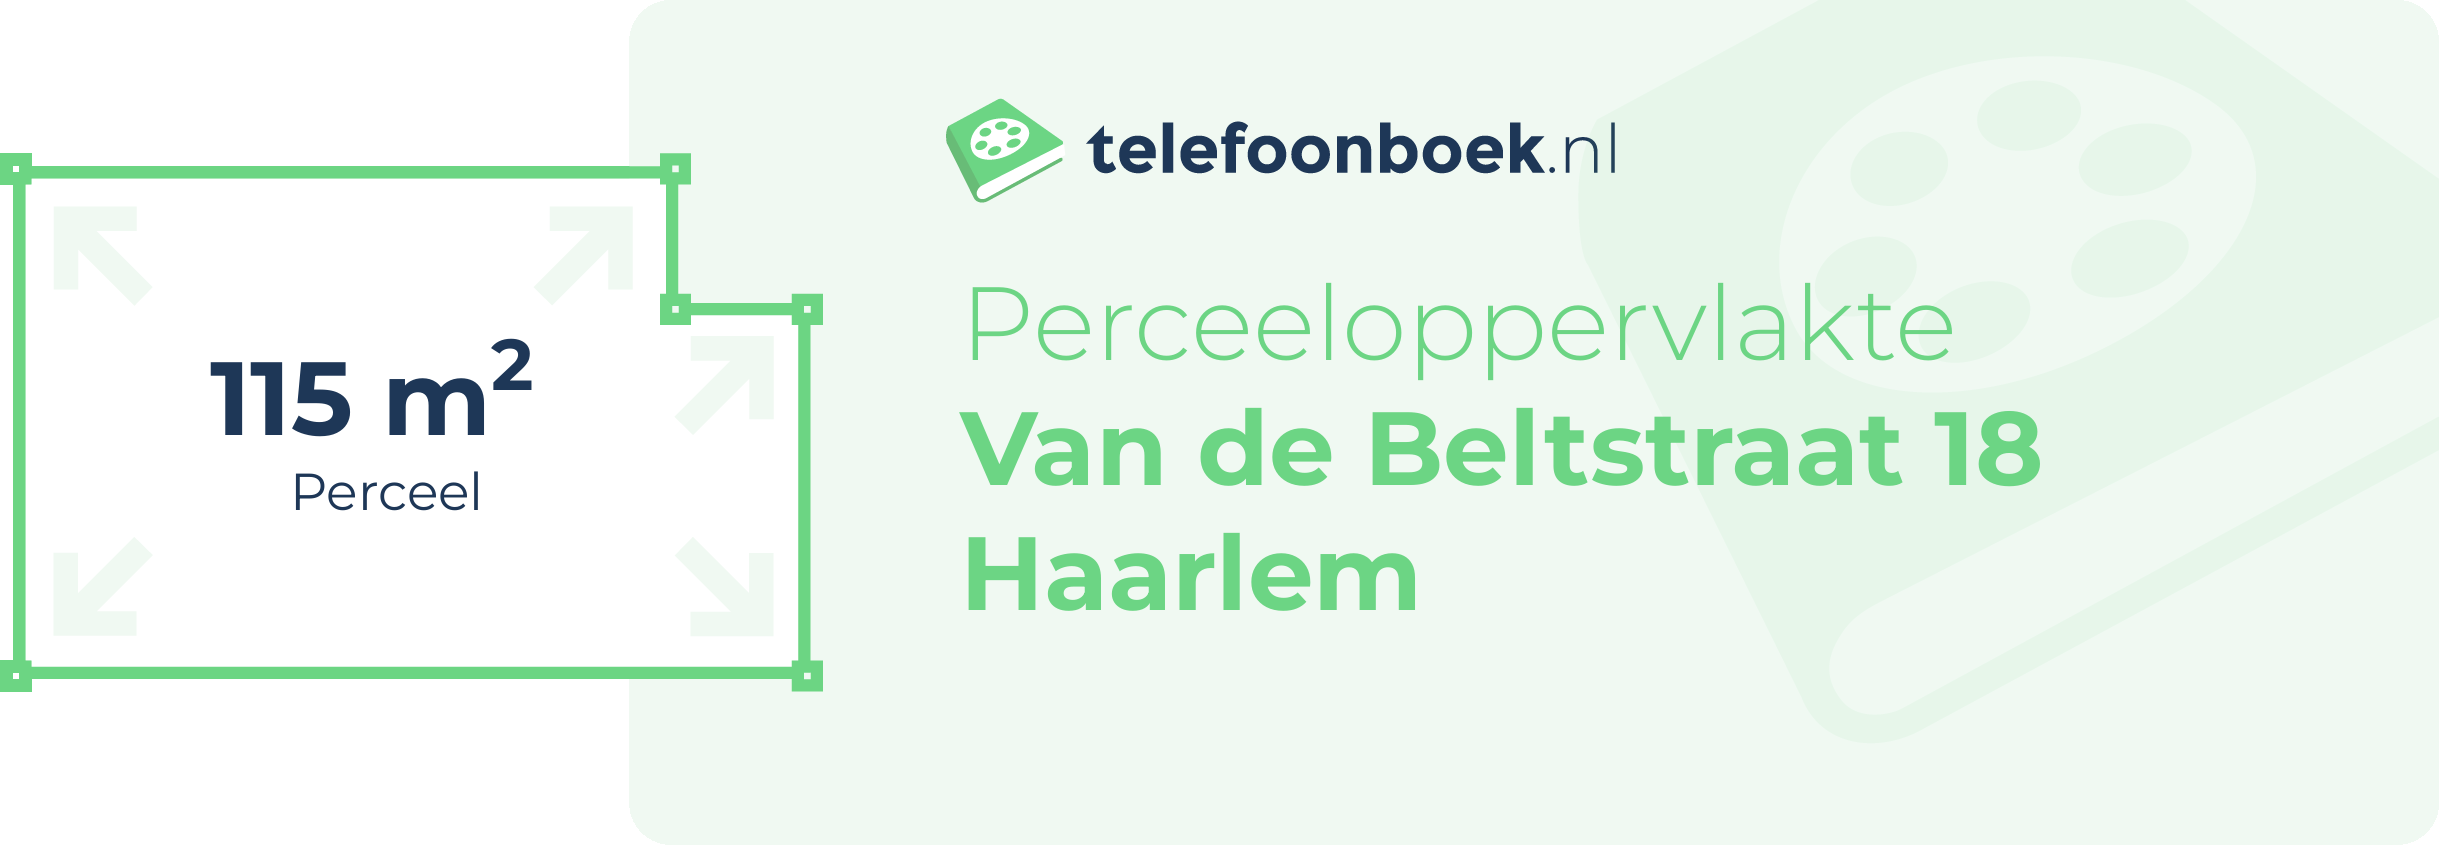 Perceeloppervlakte Van De Beltstraat 18 Haarlem